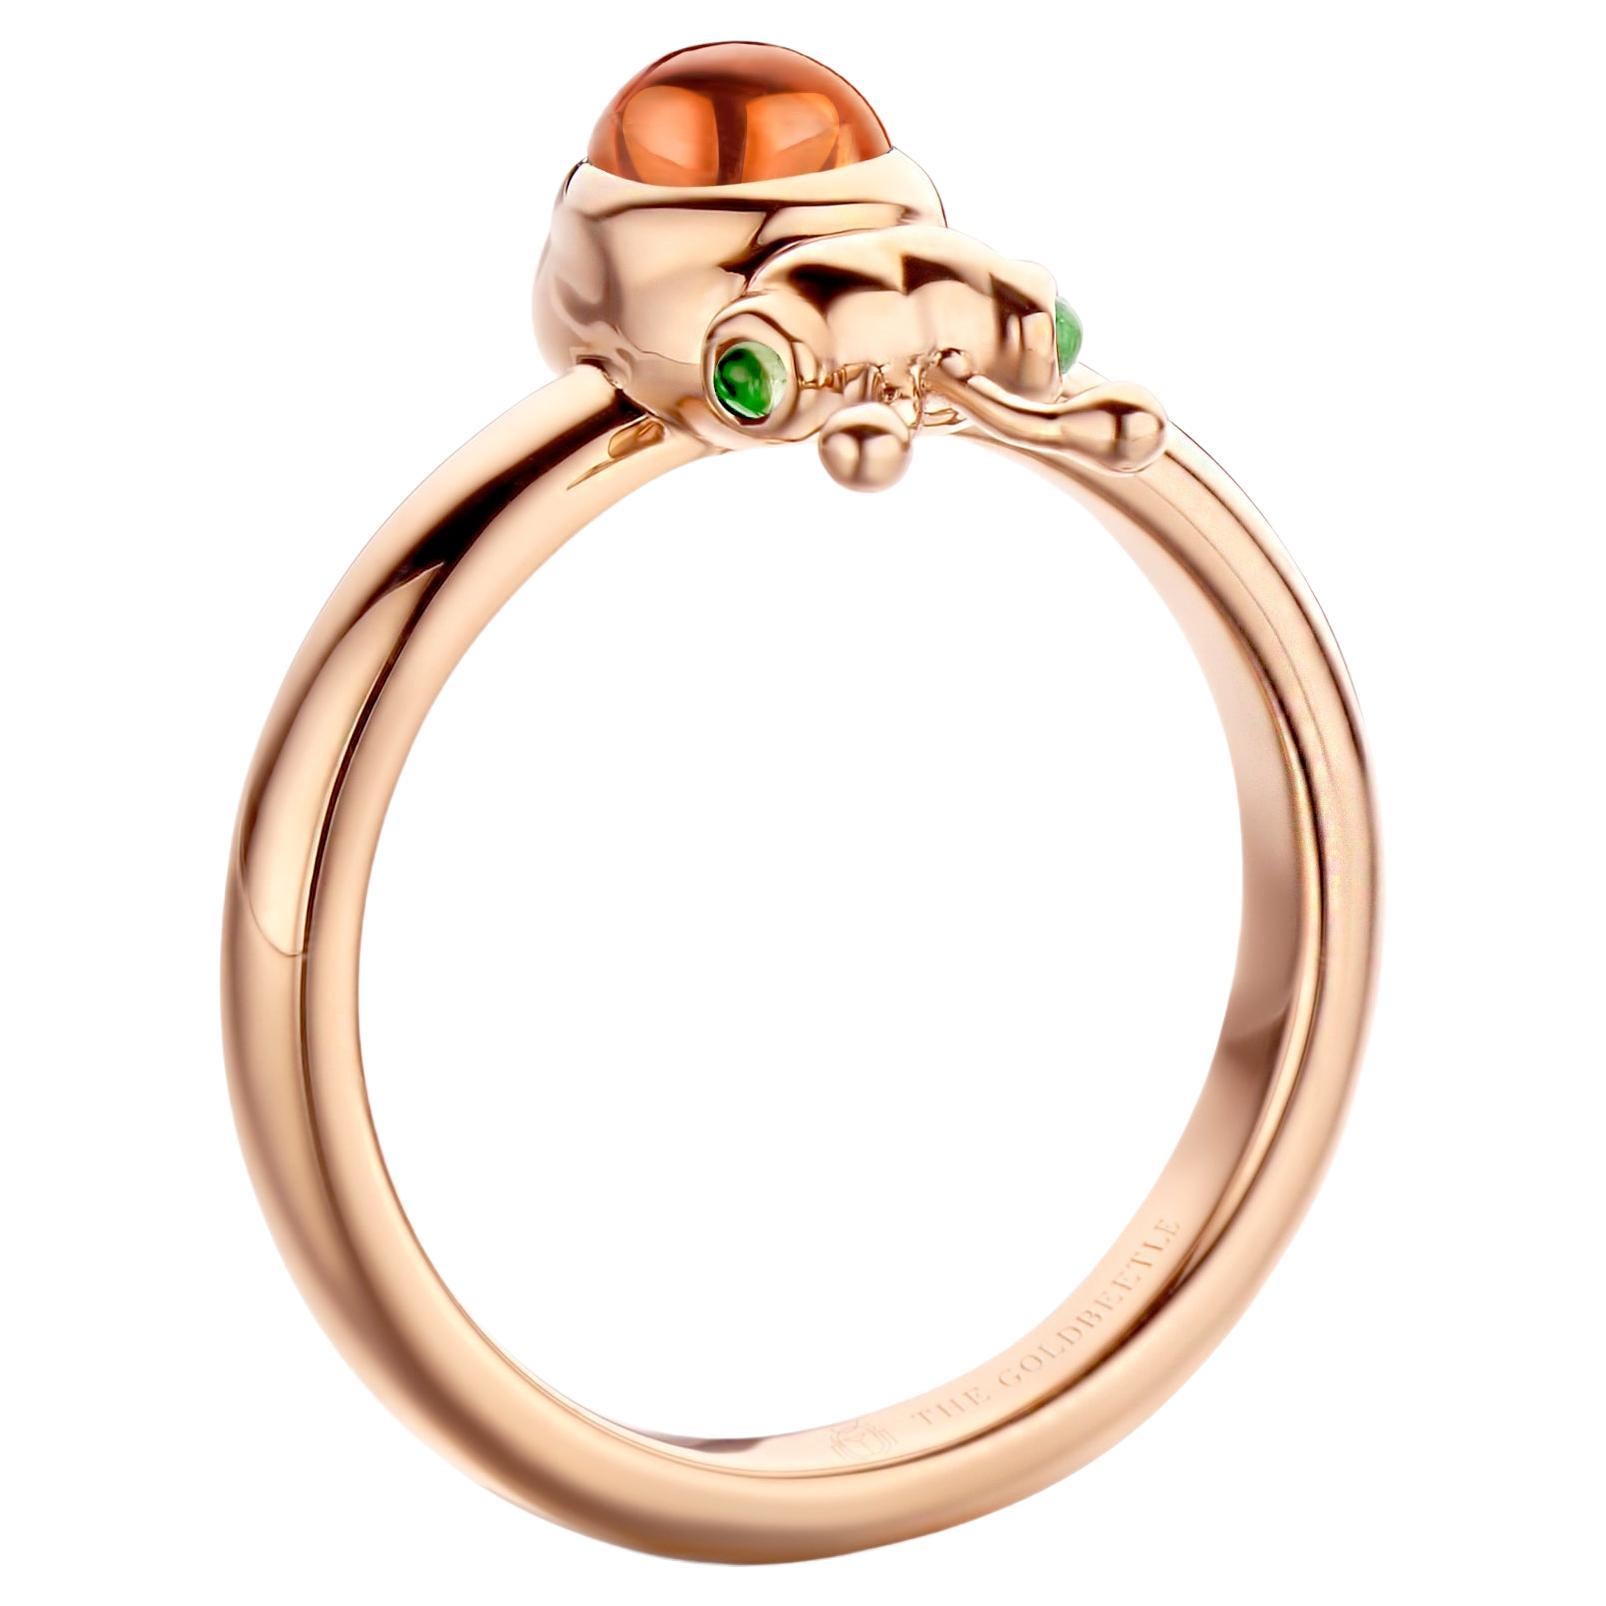 Lilou-Ring aus 18 Karat Roségold, besetzt mit einem natürlichen birnenförmigen Mandarin-Granat im Cabochon-Schliff und zwei natürlichen Tsavoriten im runden Cabochon-Schliff.

Celine Roelens, Goldschmiedin und Gemmologin, hat sich auf einzigartigen,